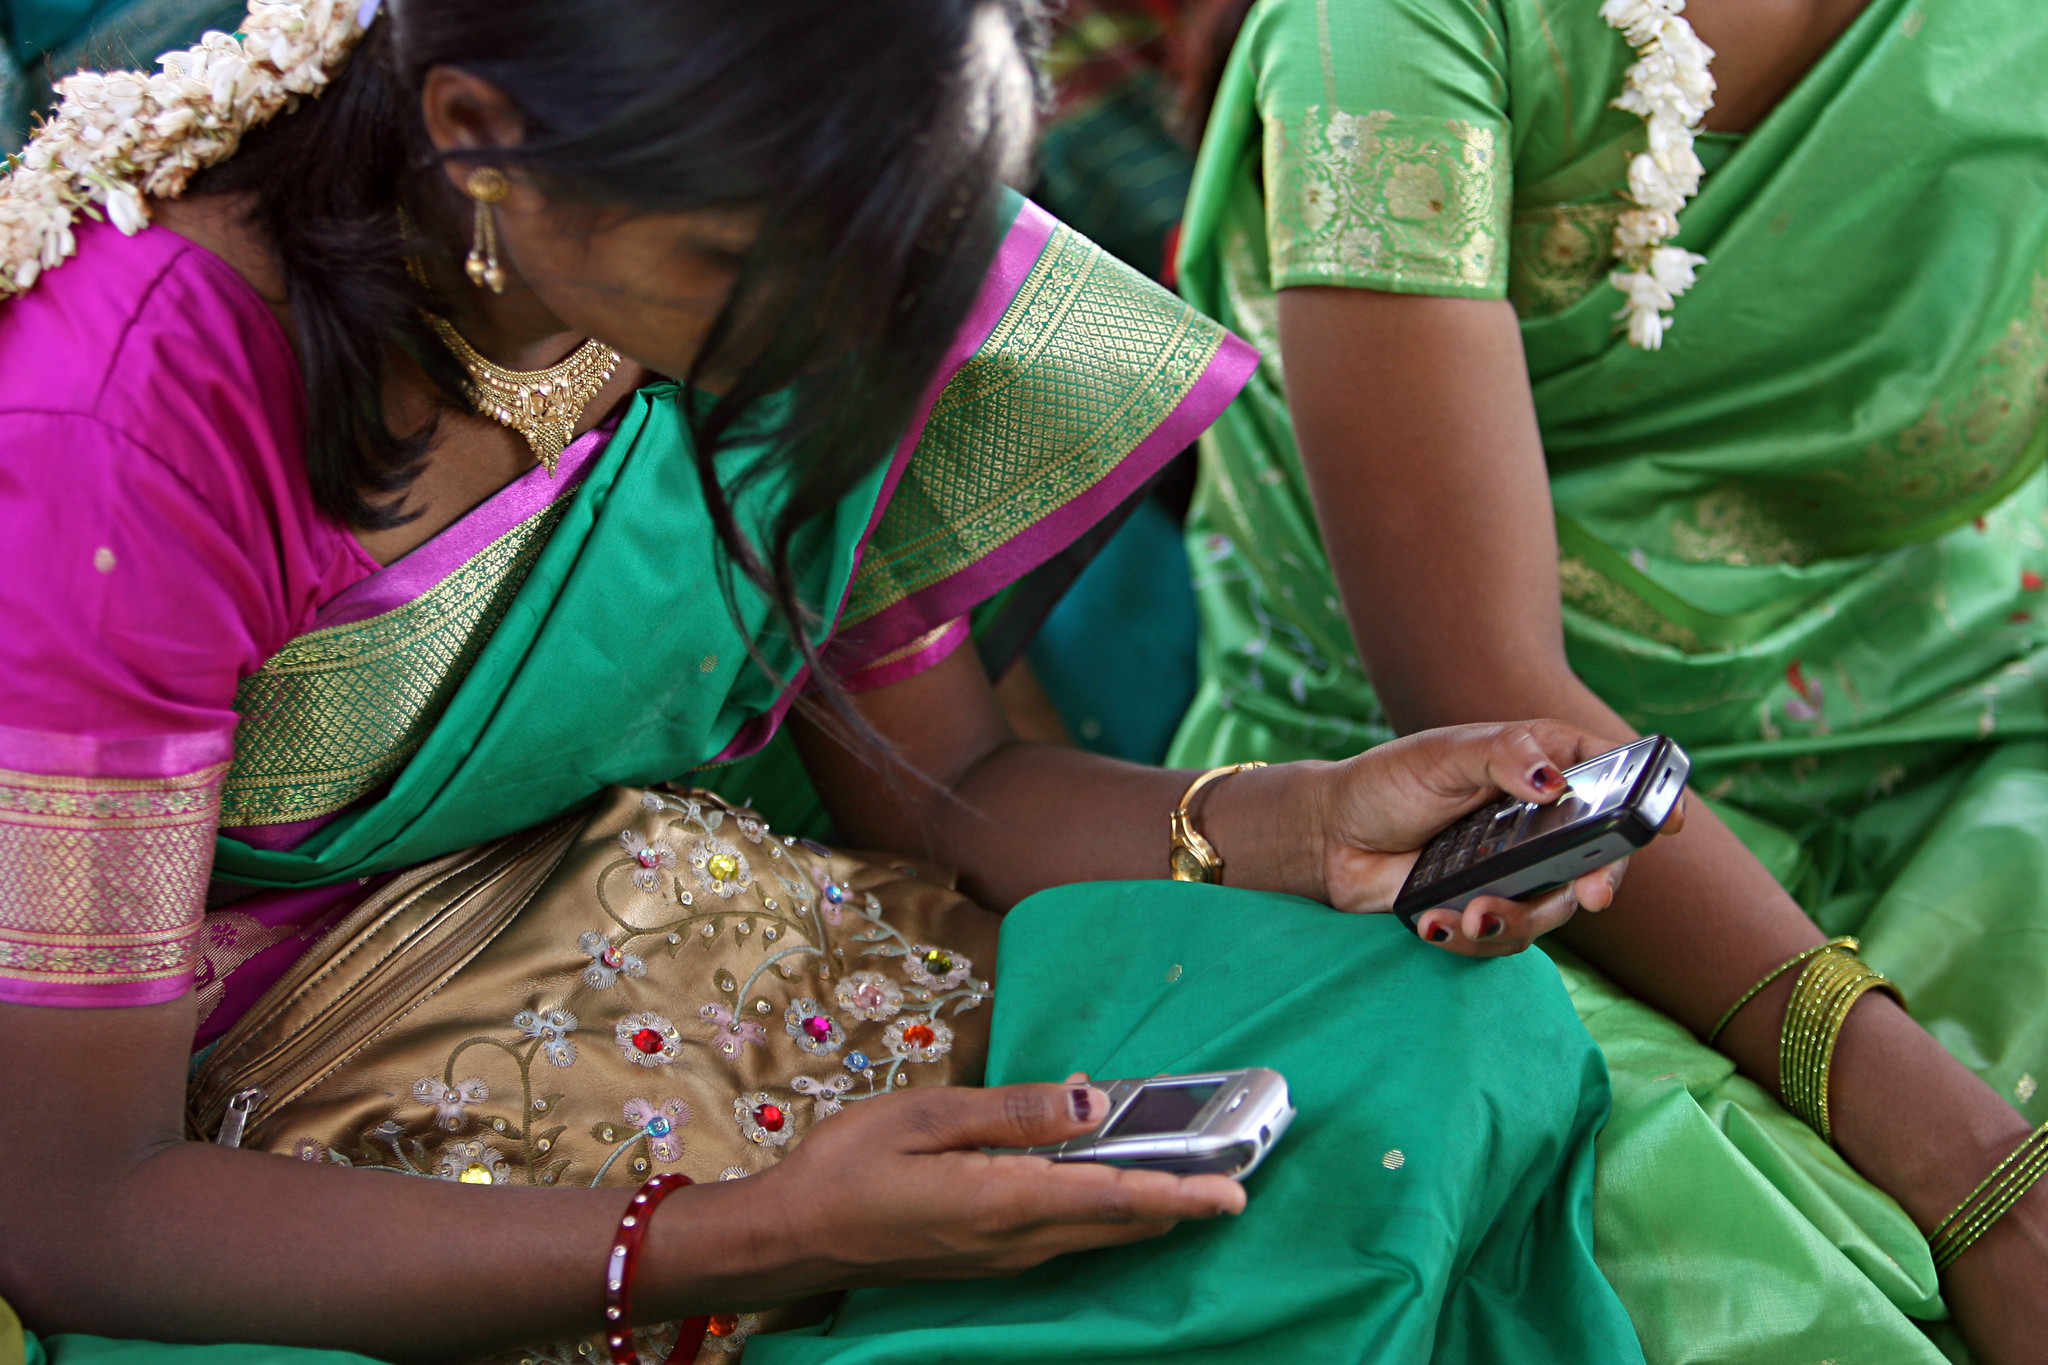 Unas jóvenes miran su móvil durante una reunión.